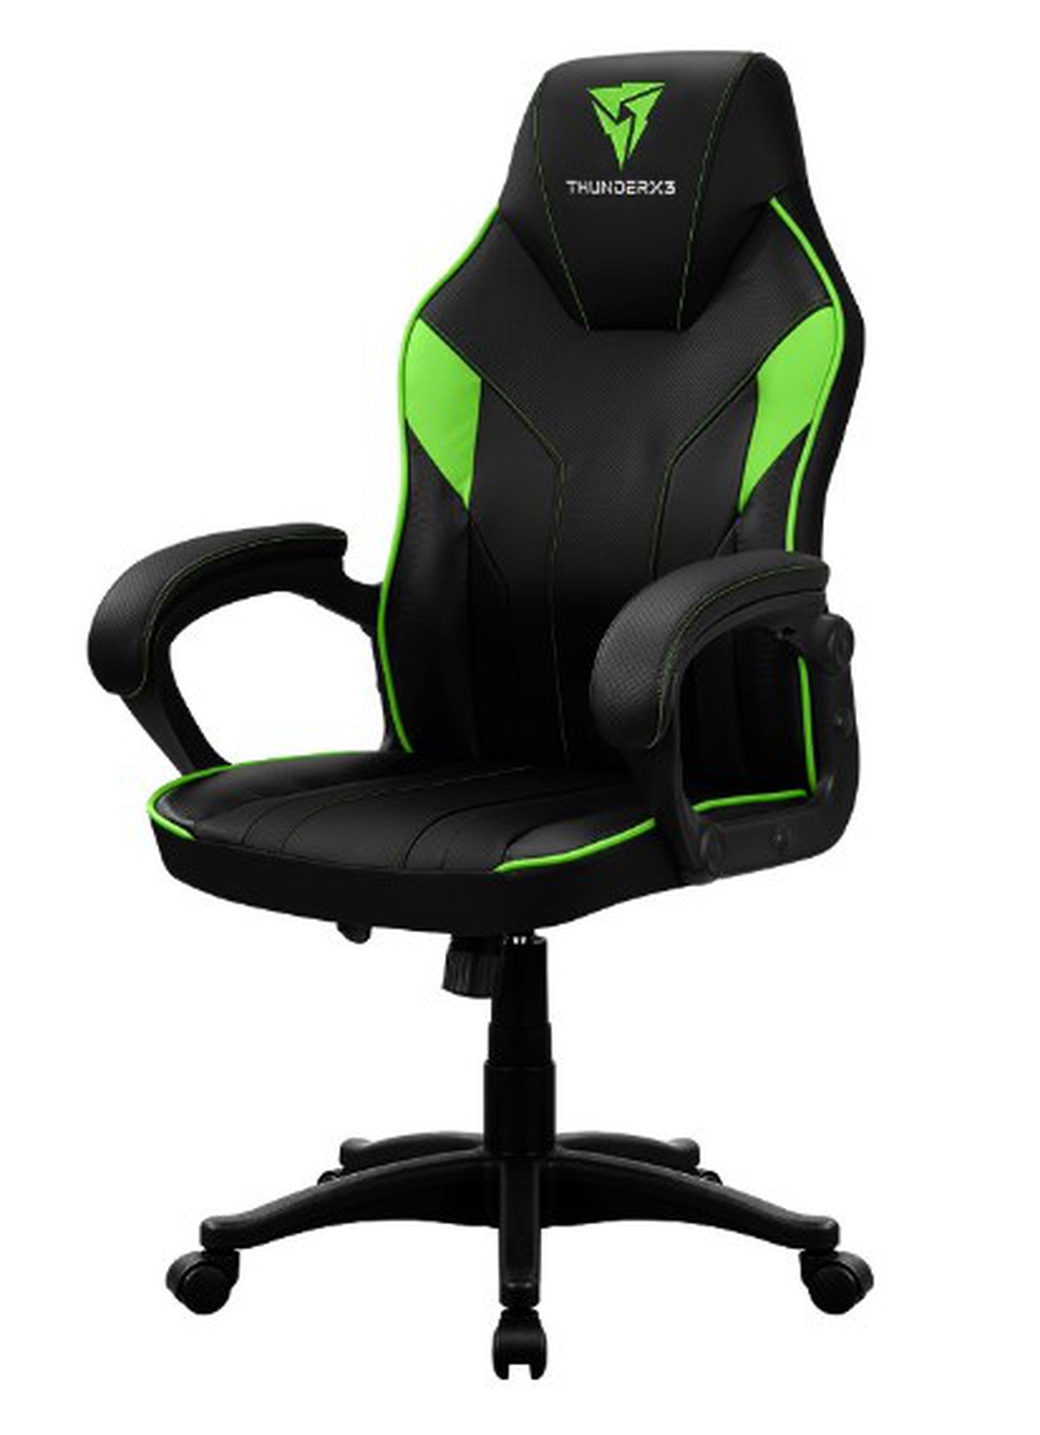 Игровое кресло ThunderX3 EC3-BG черно-зеленый AIR Tech, экокожа фото